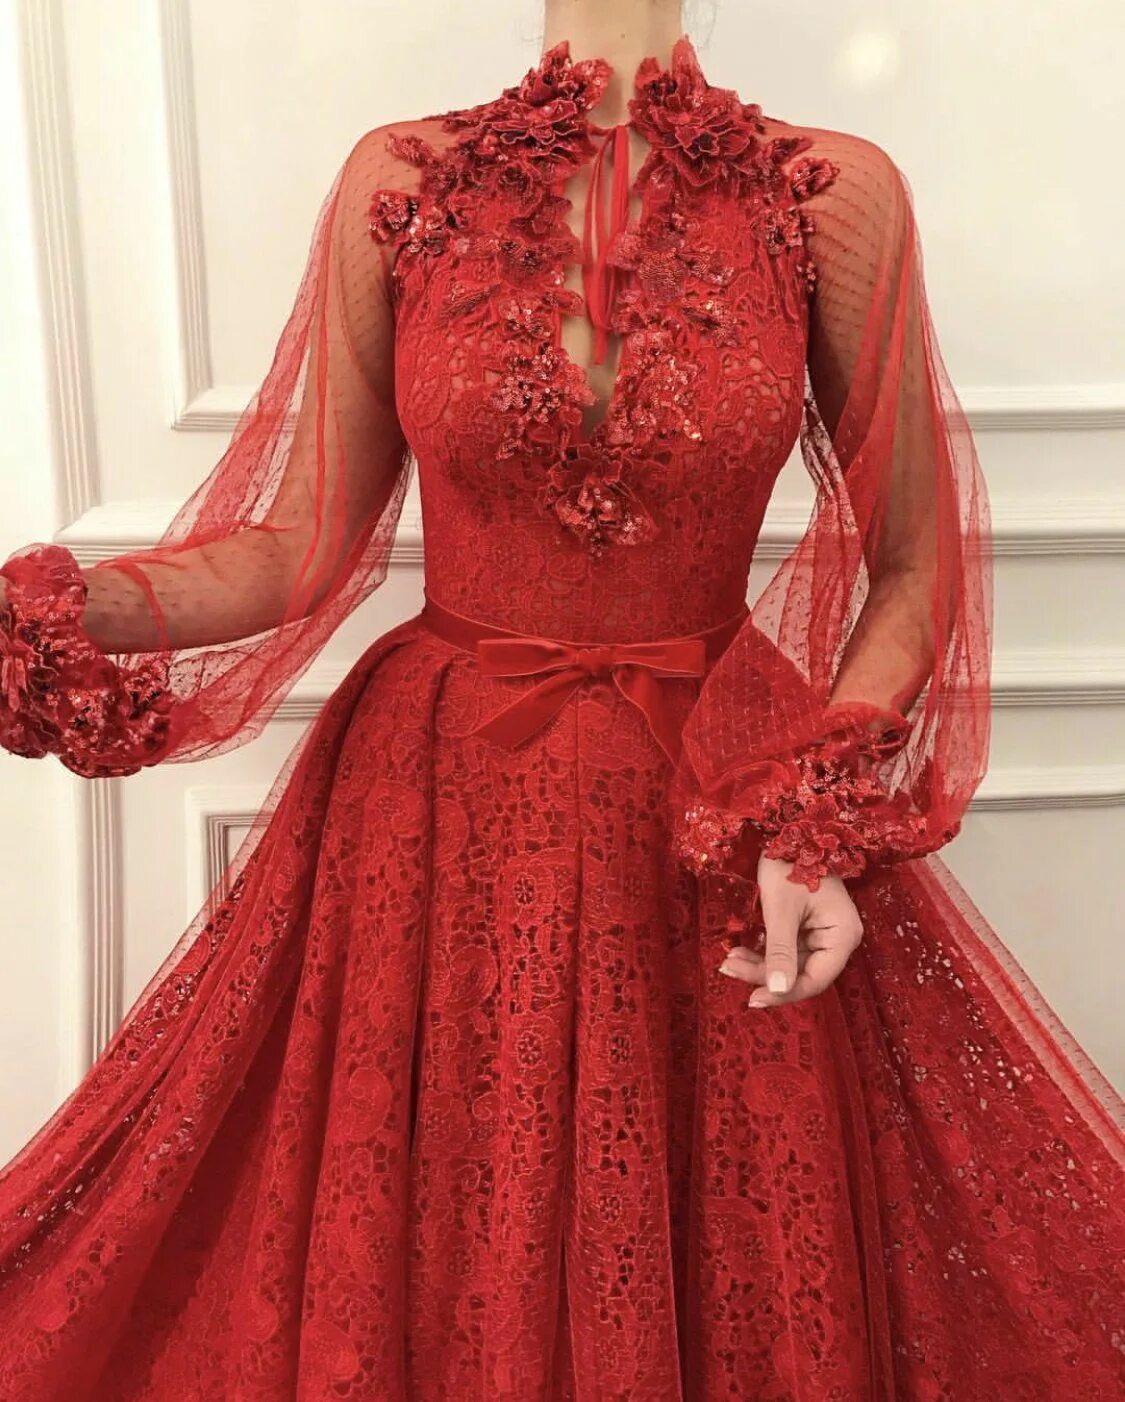 Турецкий дизайнер Teuta Matoshi. Teuta Matoshi платья красное. Teuta Matoshi Duriqi дизайнер. Платья турецкого дизайнера Teuta Matoshi. Красивые платья длинный рукав